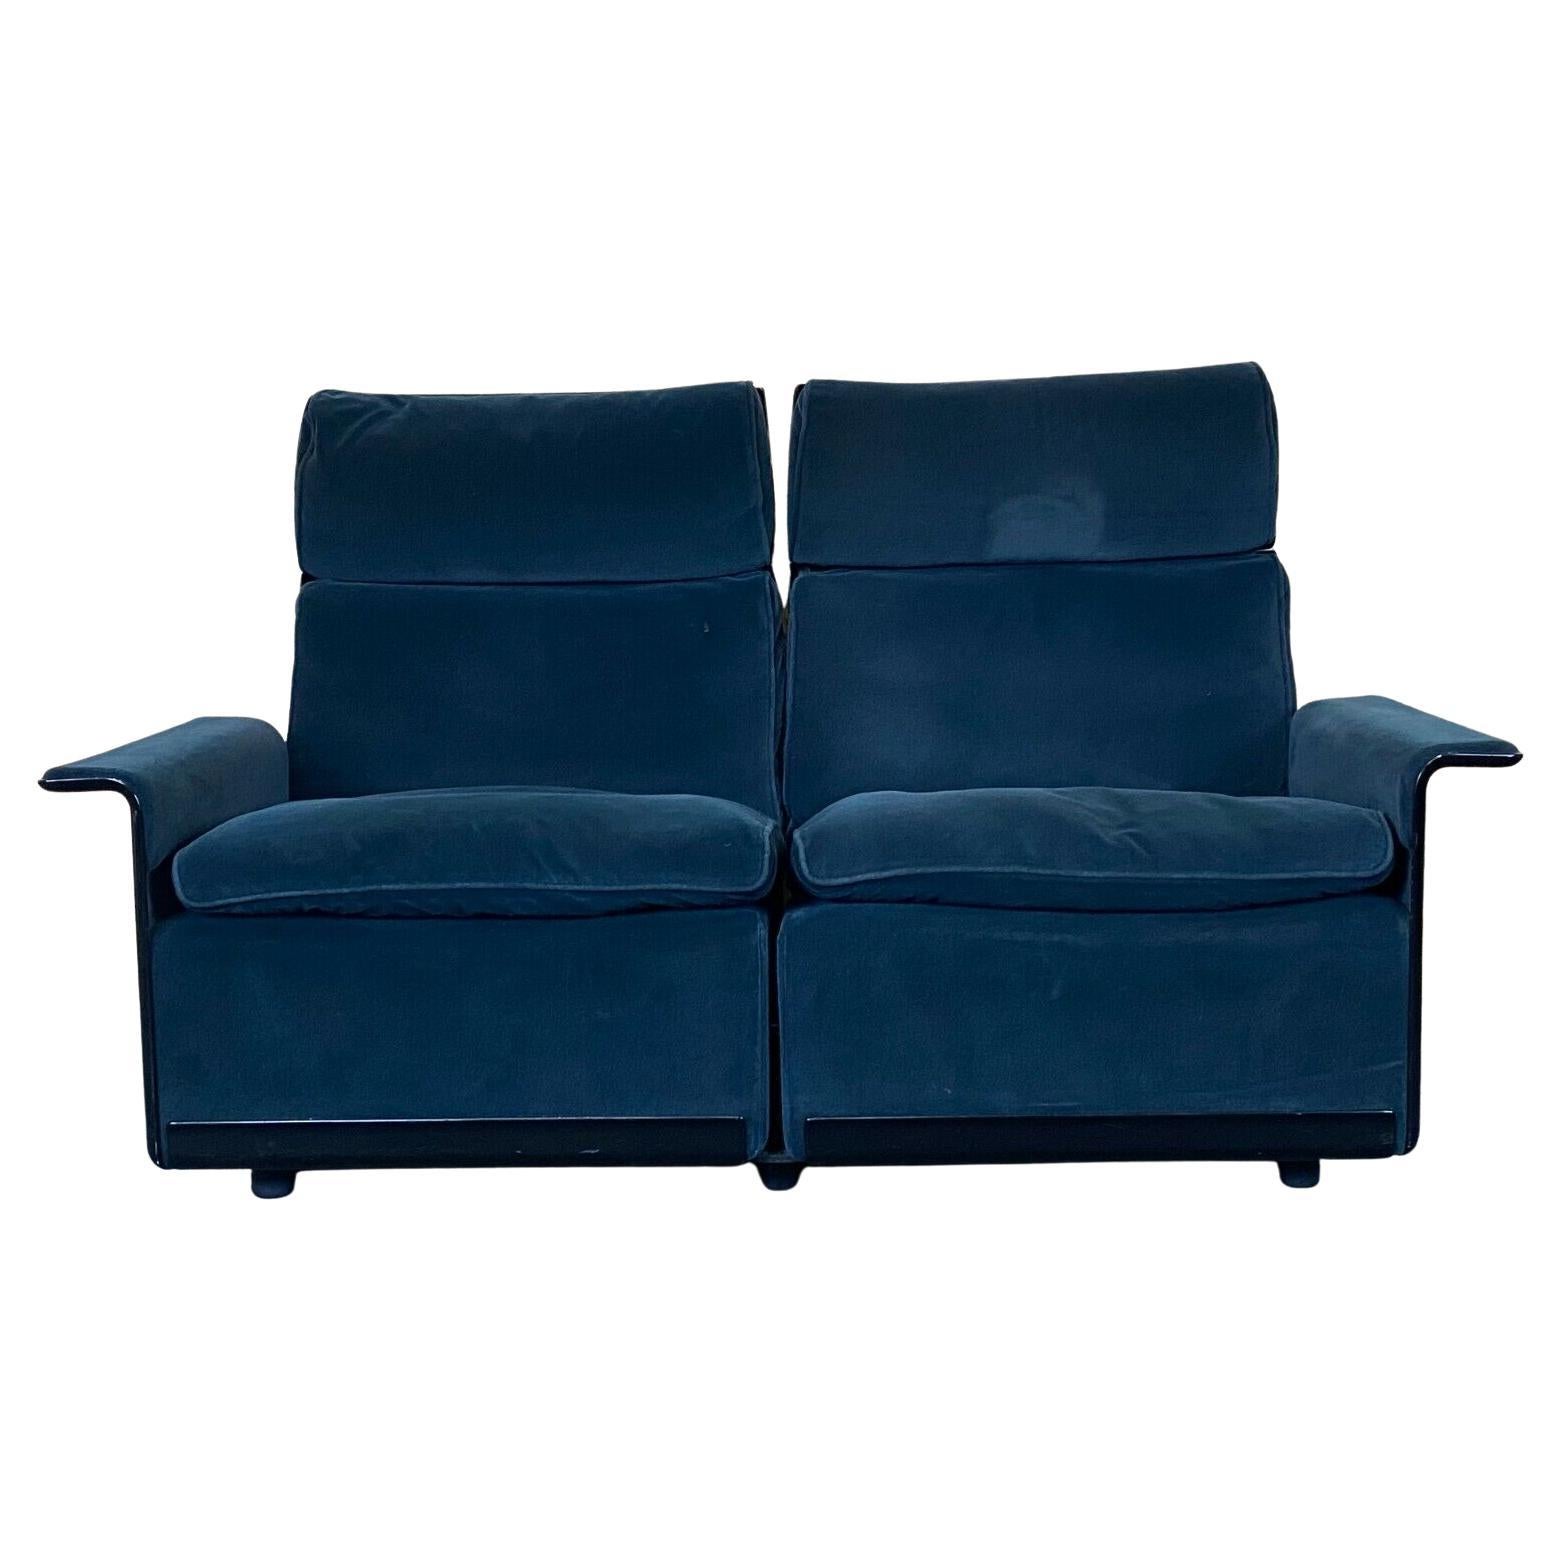 Fauteuil Dieter Rams pour Vitsoe Program 620 Design Couch Fabric des années 60 70